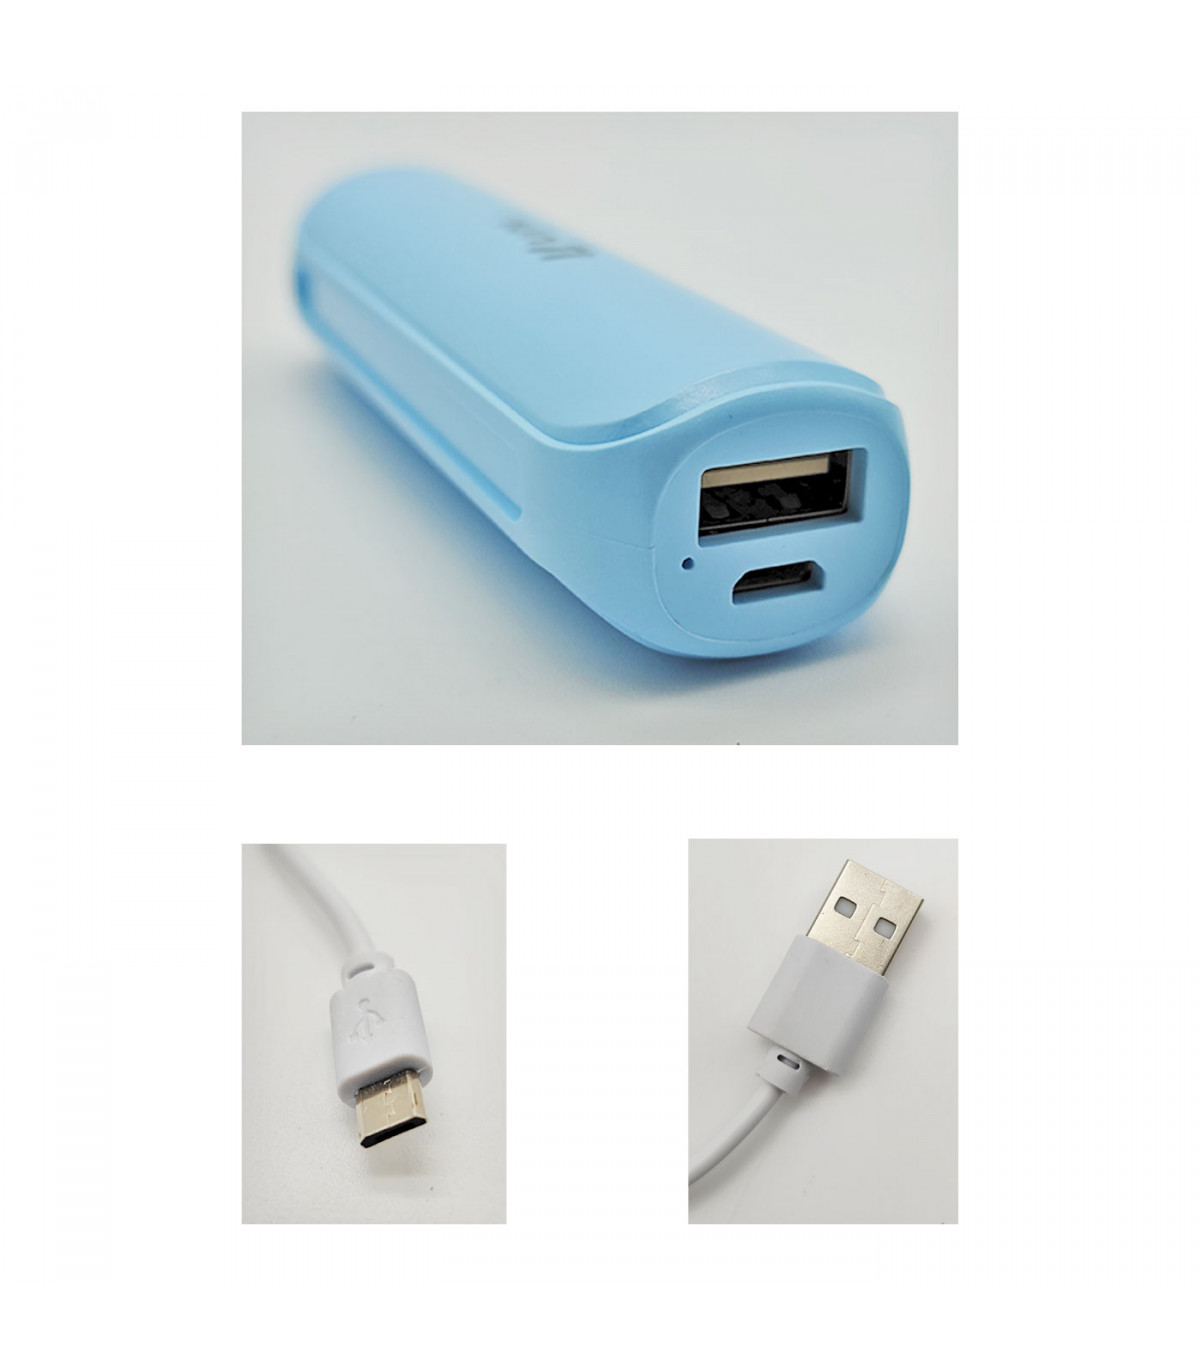 Batería externa azul 2600 mAh, 1.0A, cable micro-USB, indicador